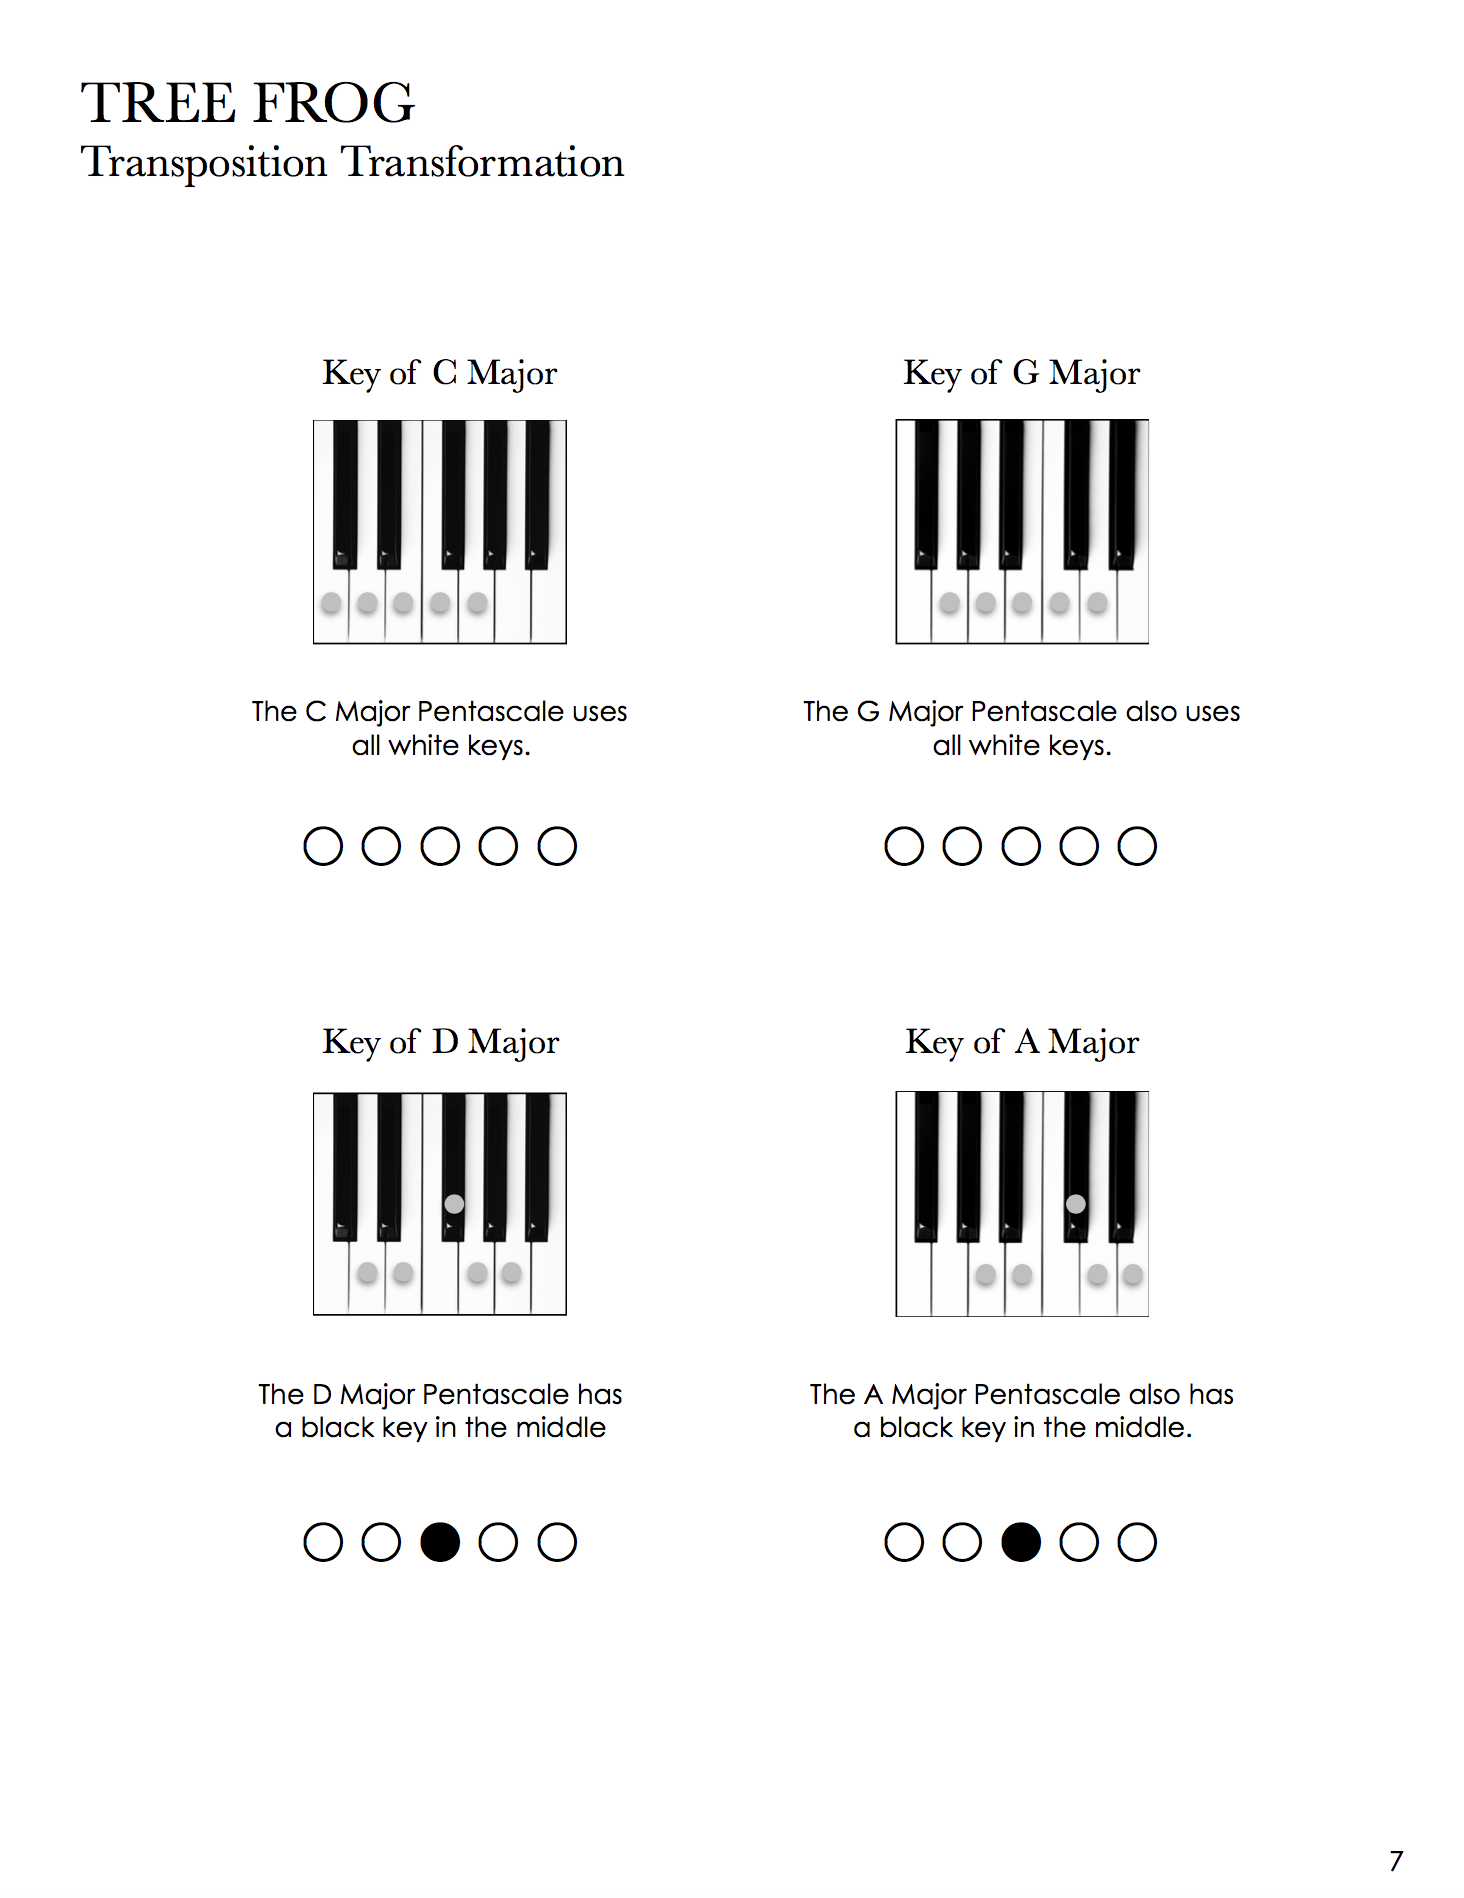 PRÉ-VENDA KIT Piano Safari para crianças a partir de 7 anos (Level 1 + 2 + 3) Série com os livros Repertoire Book + Technique Book dos 3 Níveis Piano Safari Method em um TRIO MIX (exceto teoria)